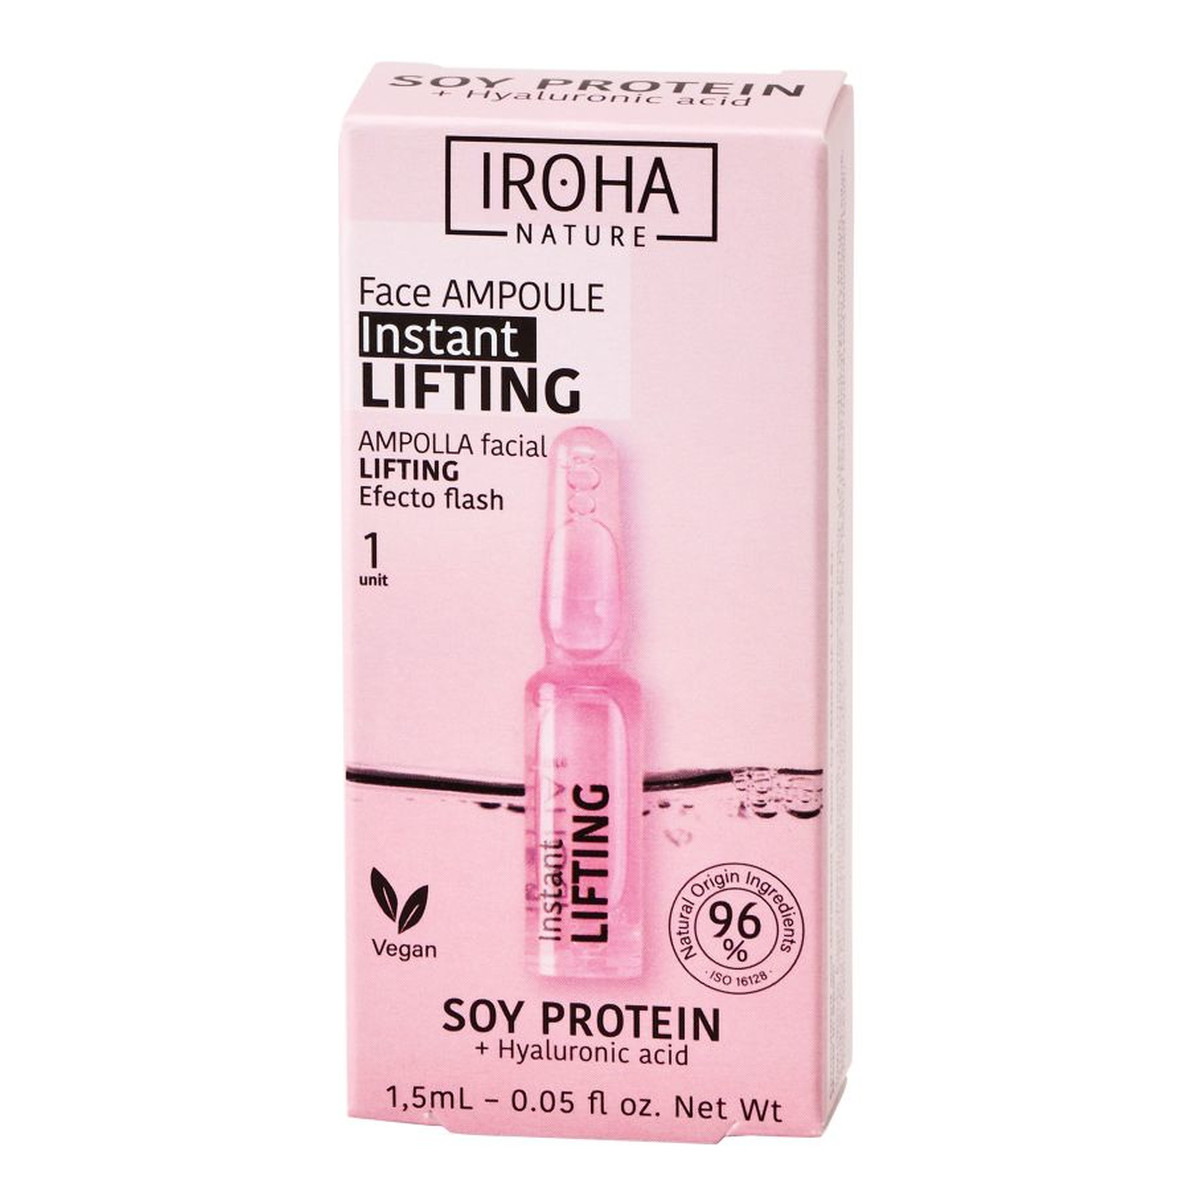 Iroha Nature Instant Flash Lifting Face Ampoule liftingująco-ujędrniająca ampułka do twarzy z białkiem sojowym i kwasem hialuronowym